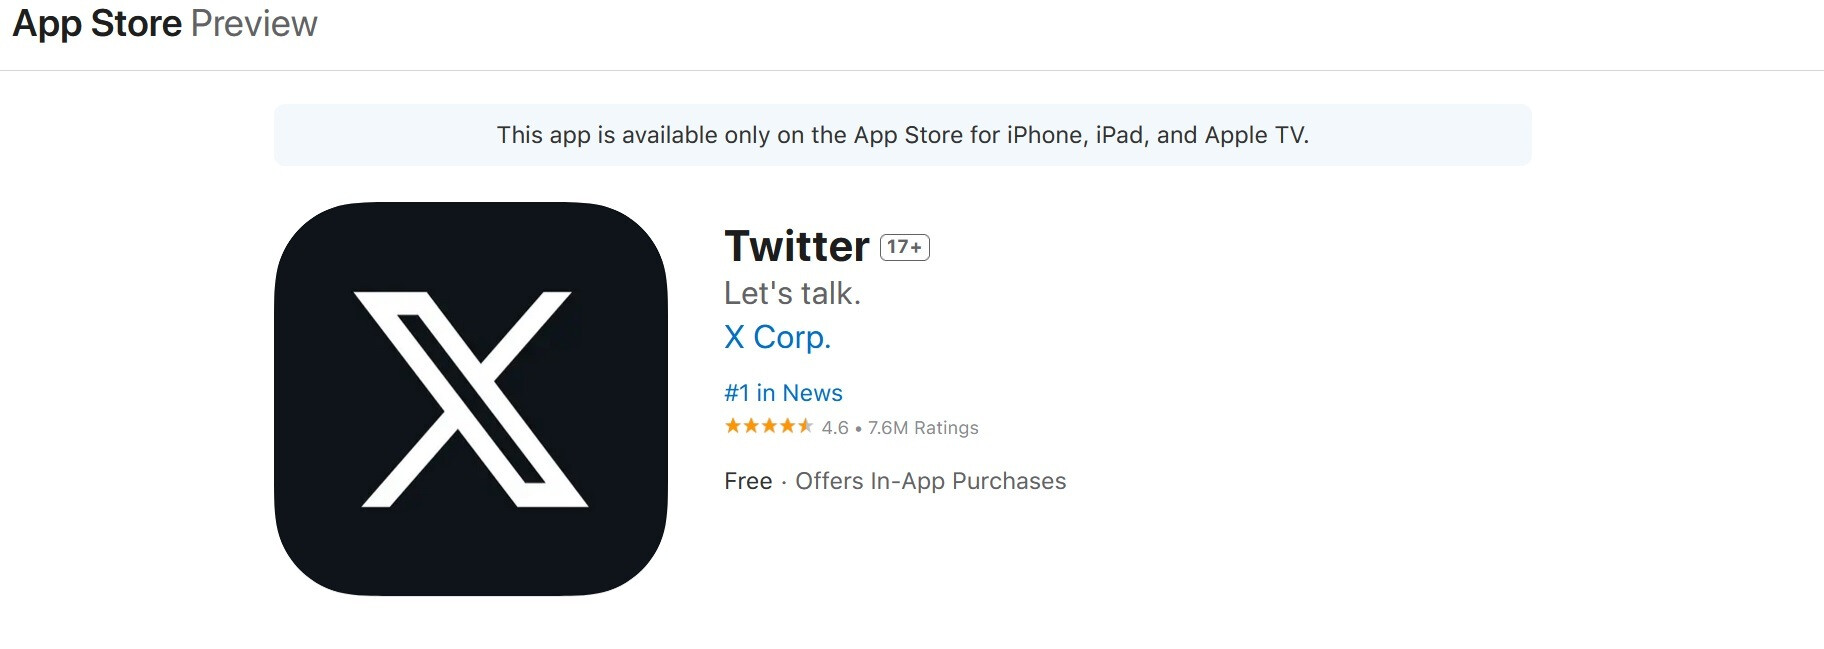 Im App Store heißt Twitter immer noch Twitter – Apple hat einen einfachen Grund, warum es Twitter nicht erlaubt, sich als Twitter umzubenennen "X" im App Store